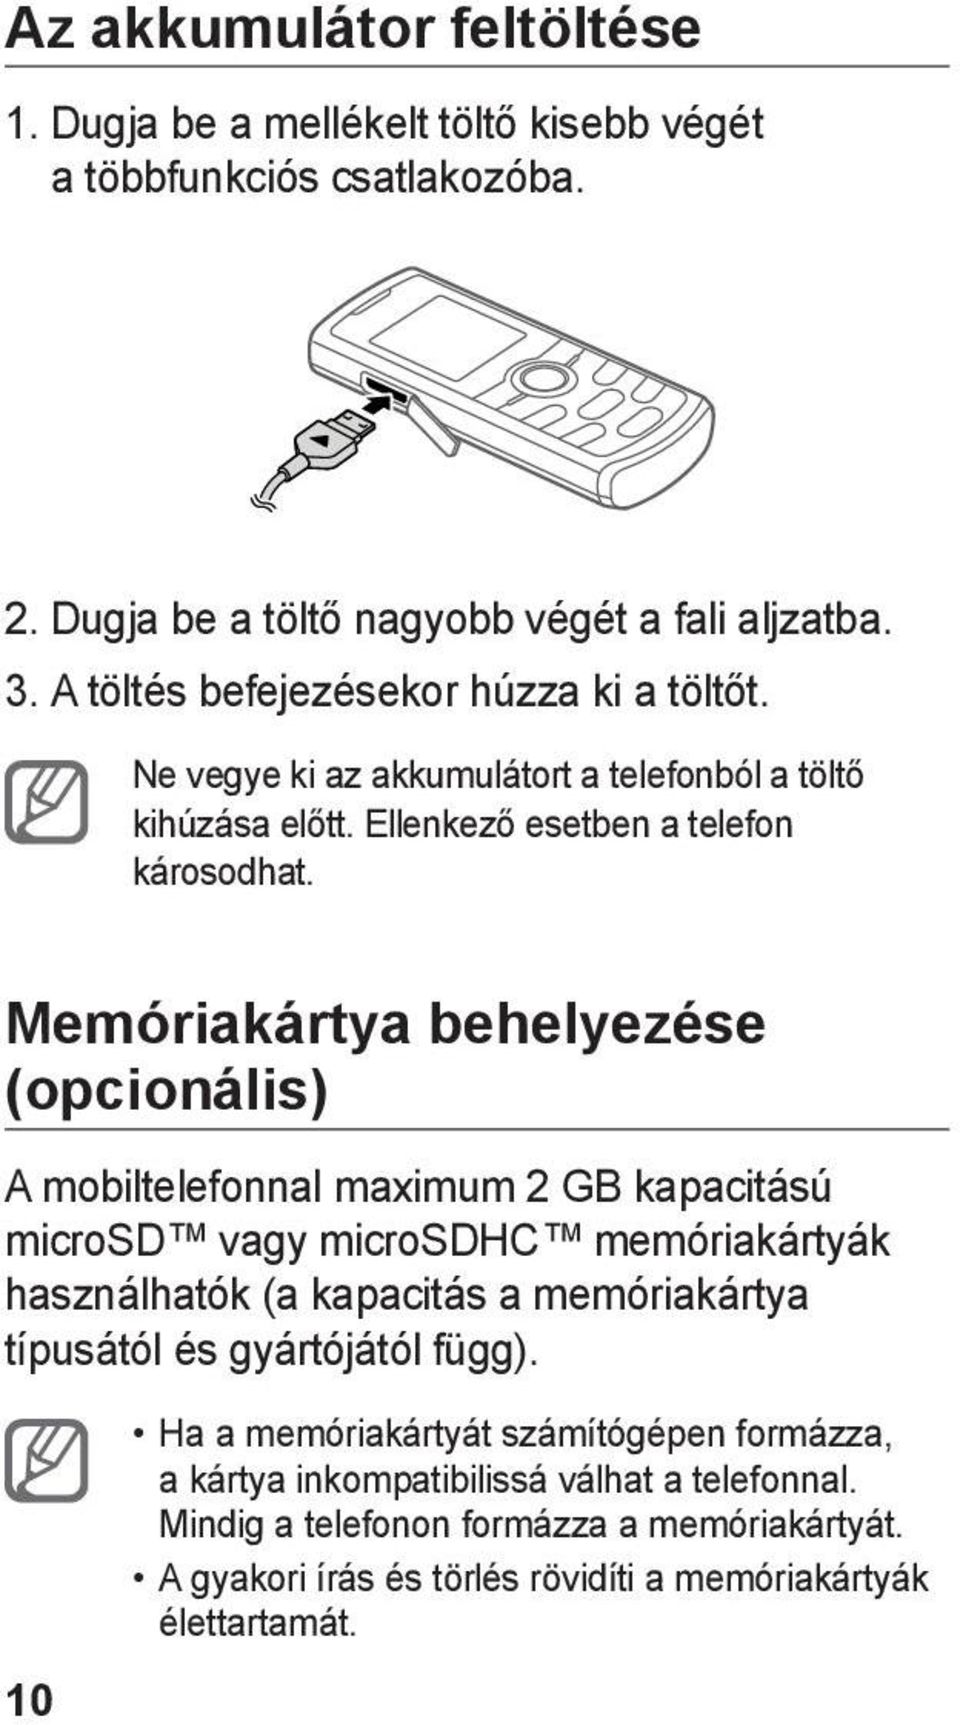 Memóriakártya behelyezése (opcionális) A mobiltelefonnal maximum 2 GB kapacitású microsd vagy microsdhc memóriakártyák használhatók (a kapacitás a memóriakártya típusától és